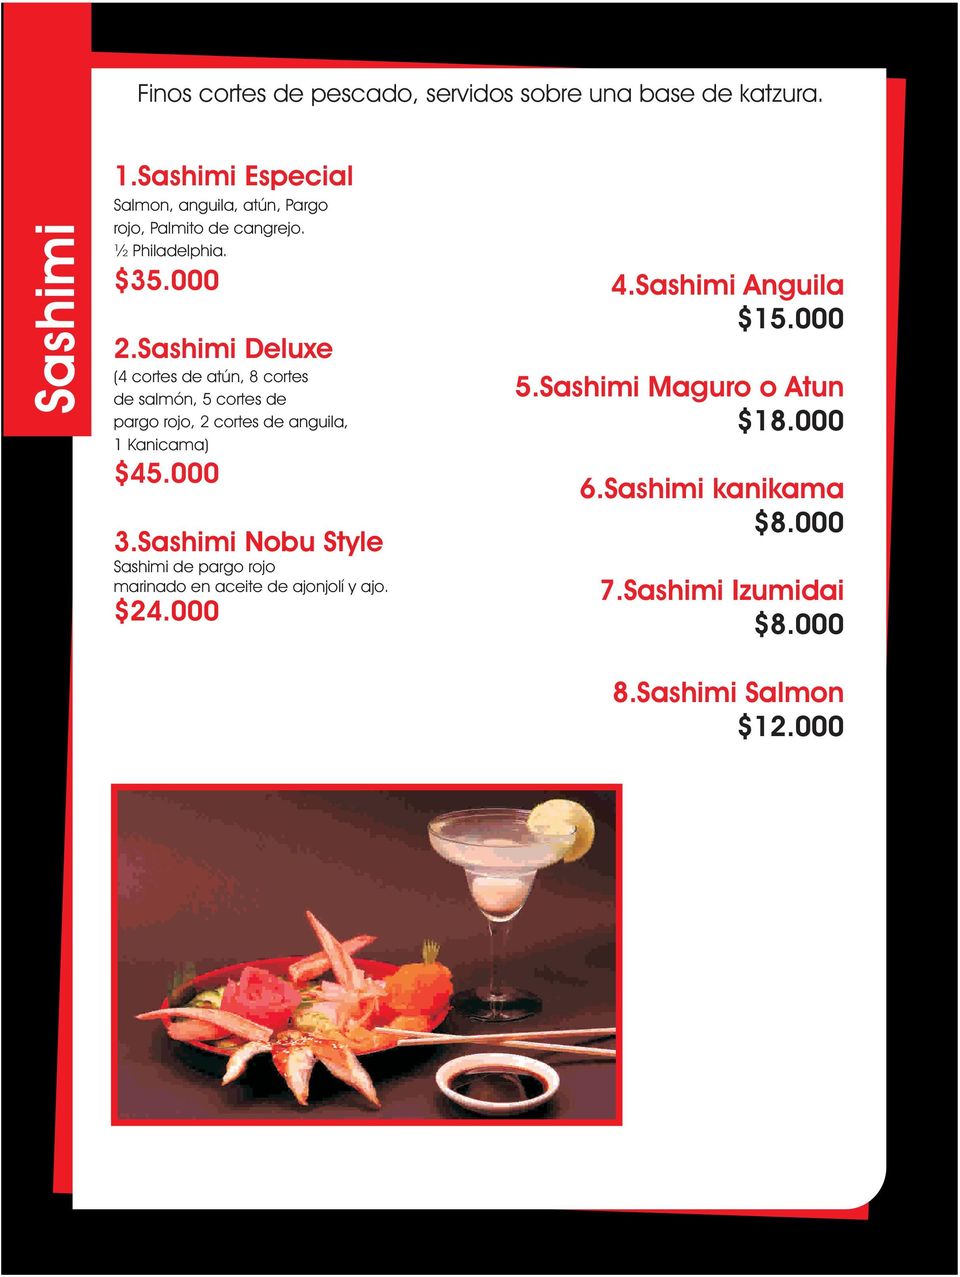 Sashimi Deluxe (4 cortes de atún, 8 cortes de salmón, 5 cortes de pargo rojo, 2 cortes de anguila, 1 Kanicama) $45.000 3.